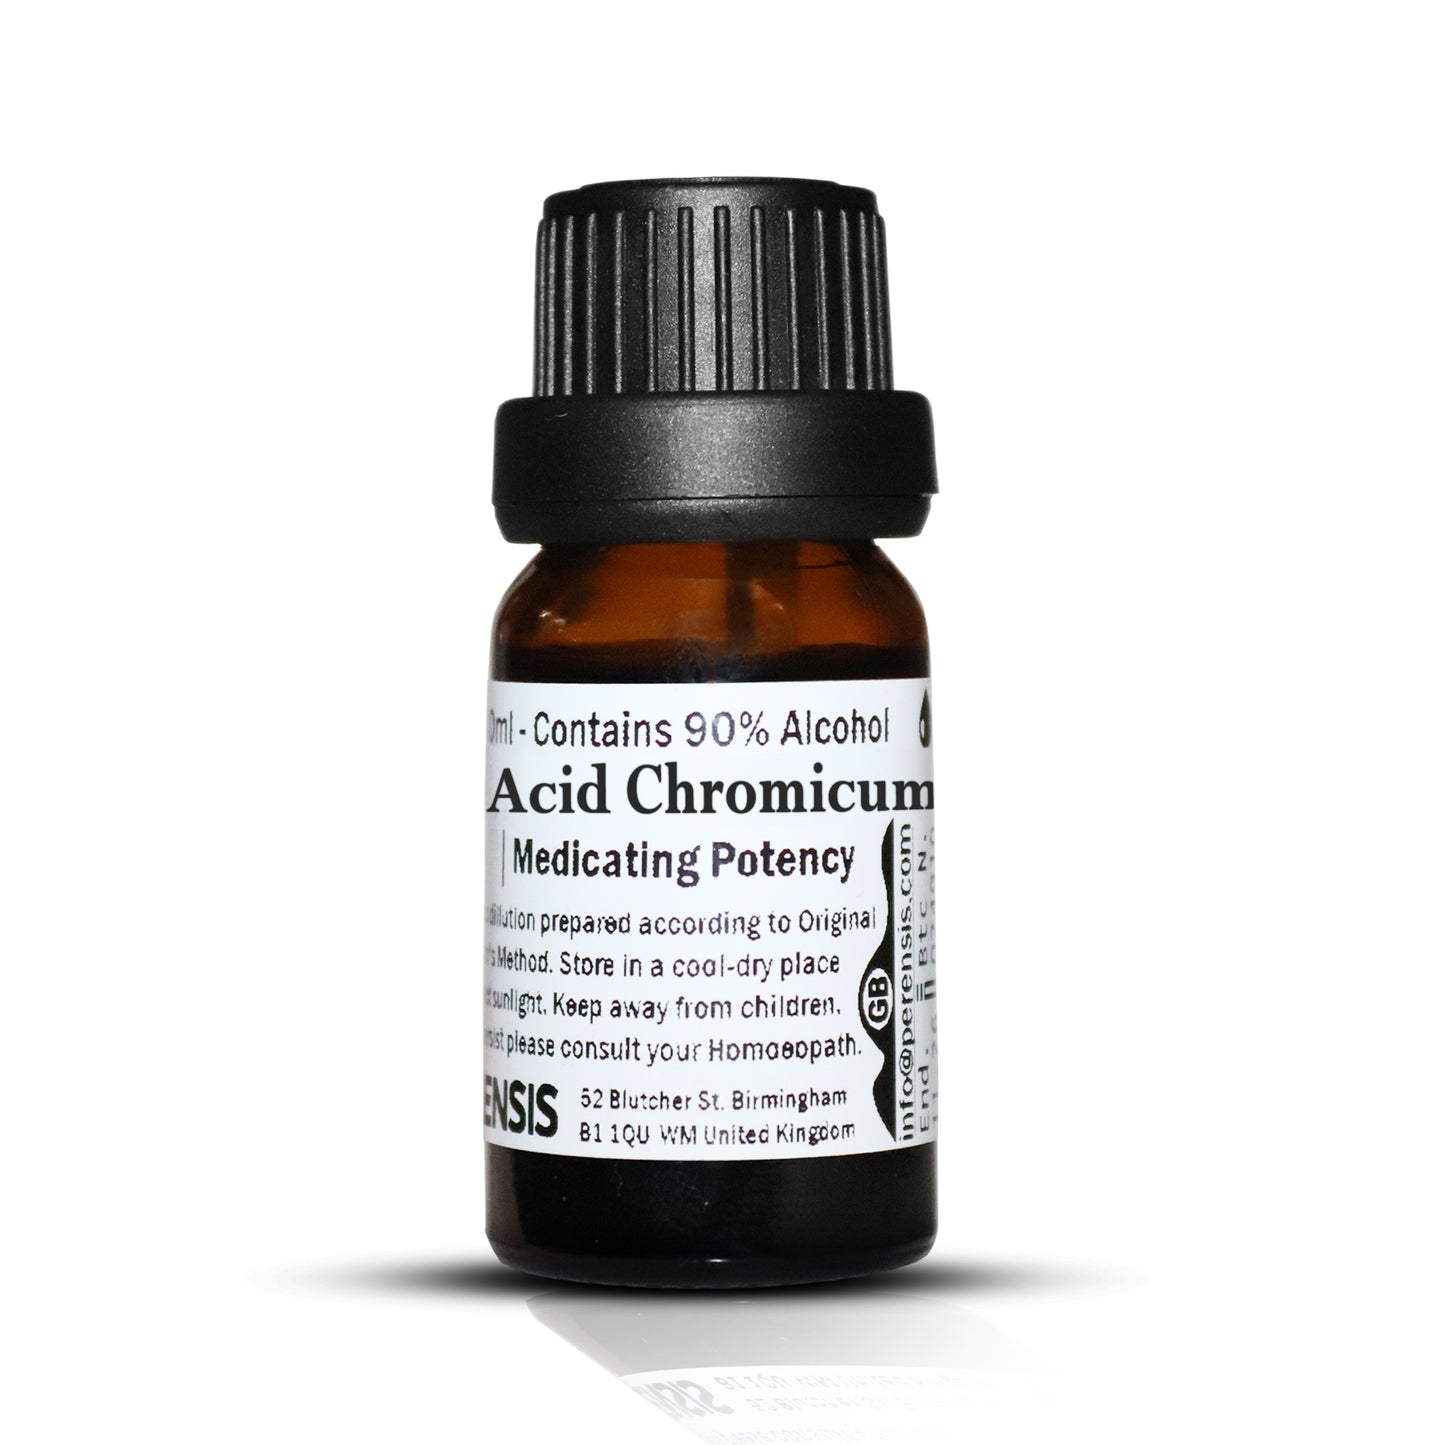 Acid Chromicum